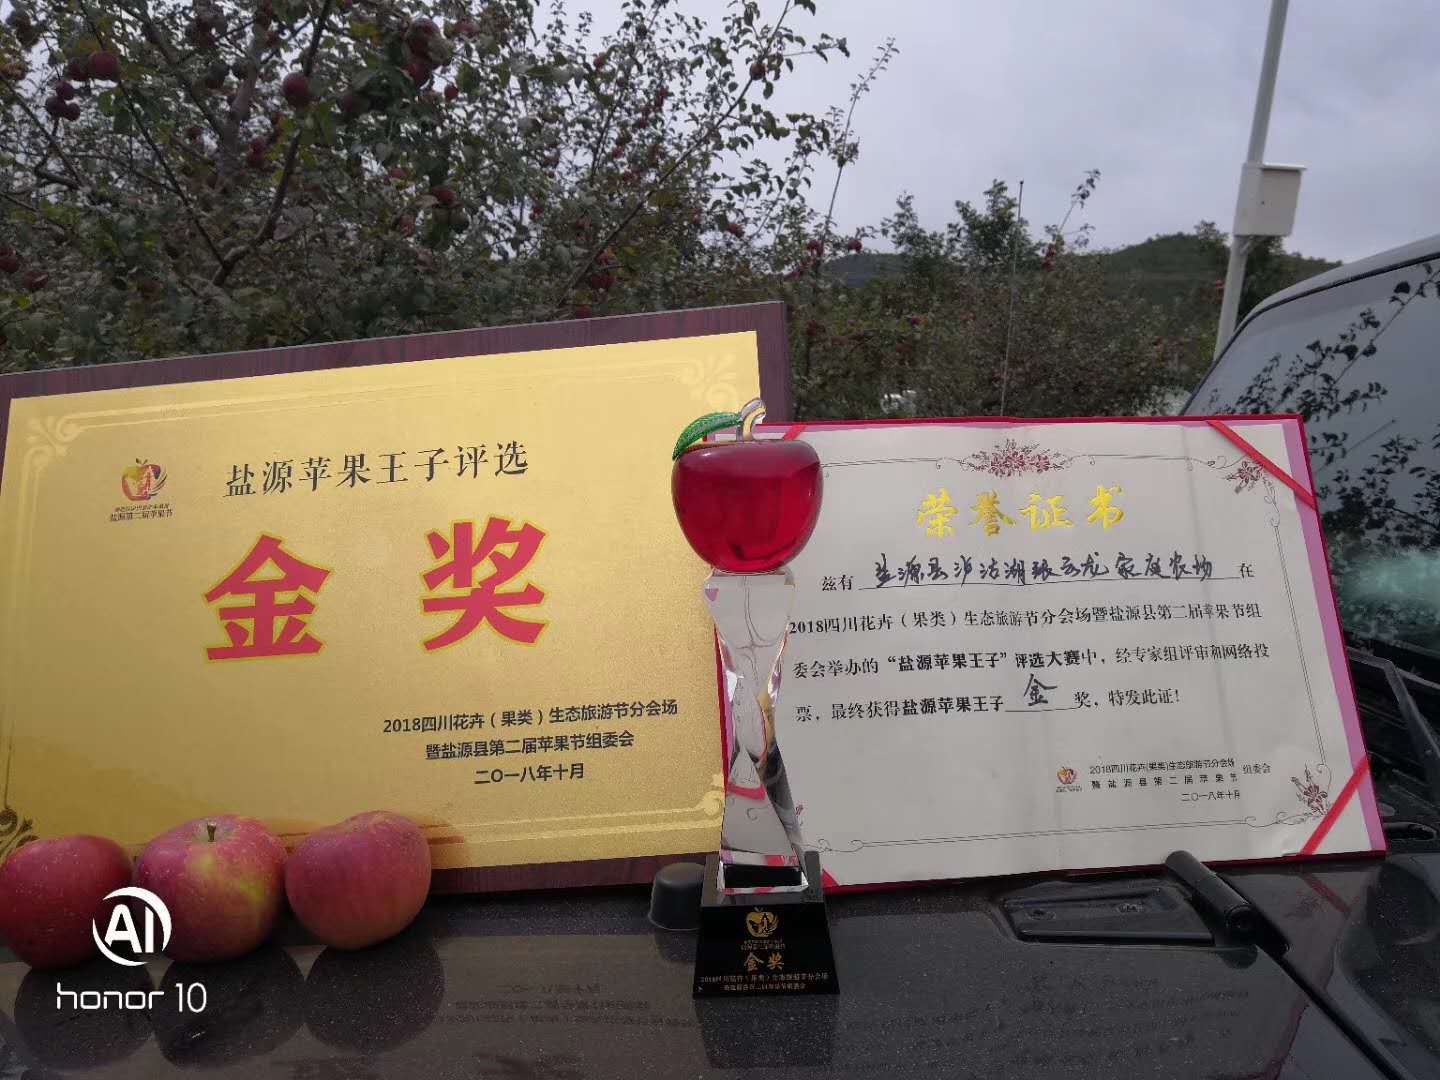 溯源合作|东哲科技与盐源县泸沽湖镇张云龙苹果种植家庭农场签署溯源合作协议